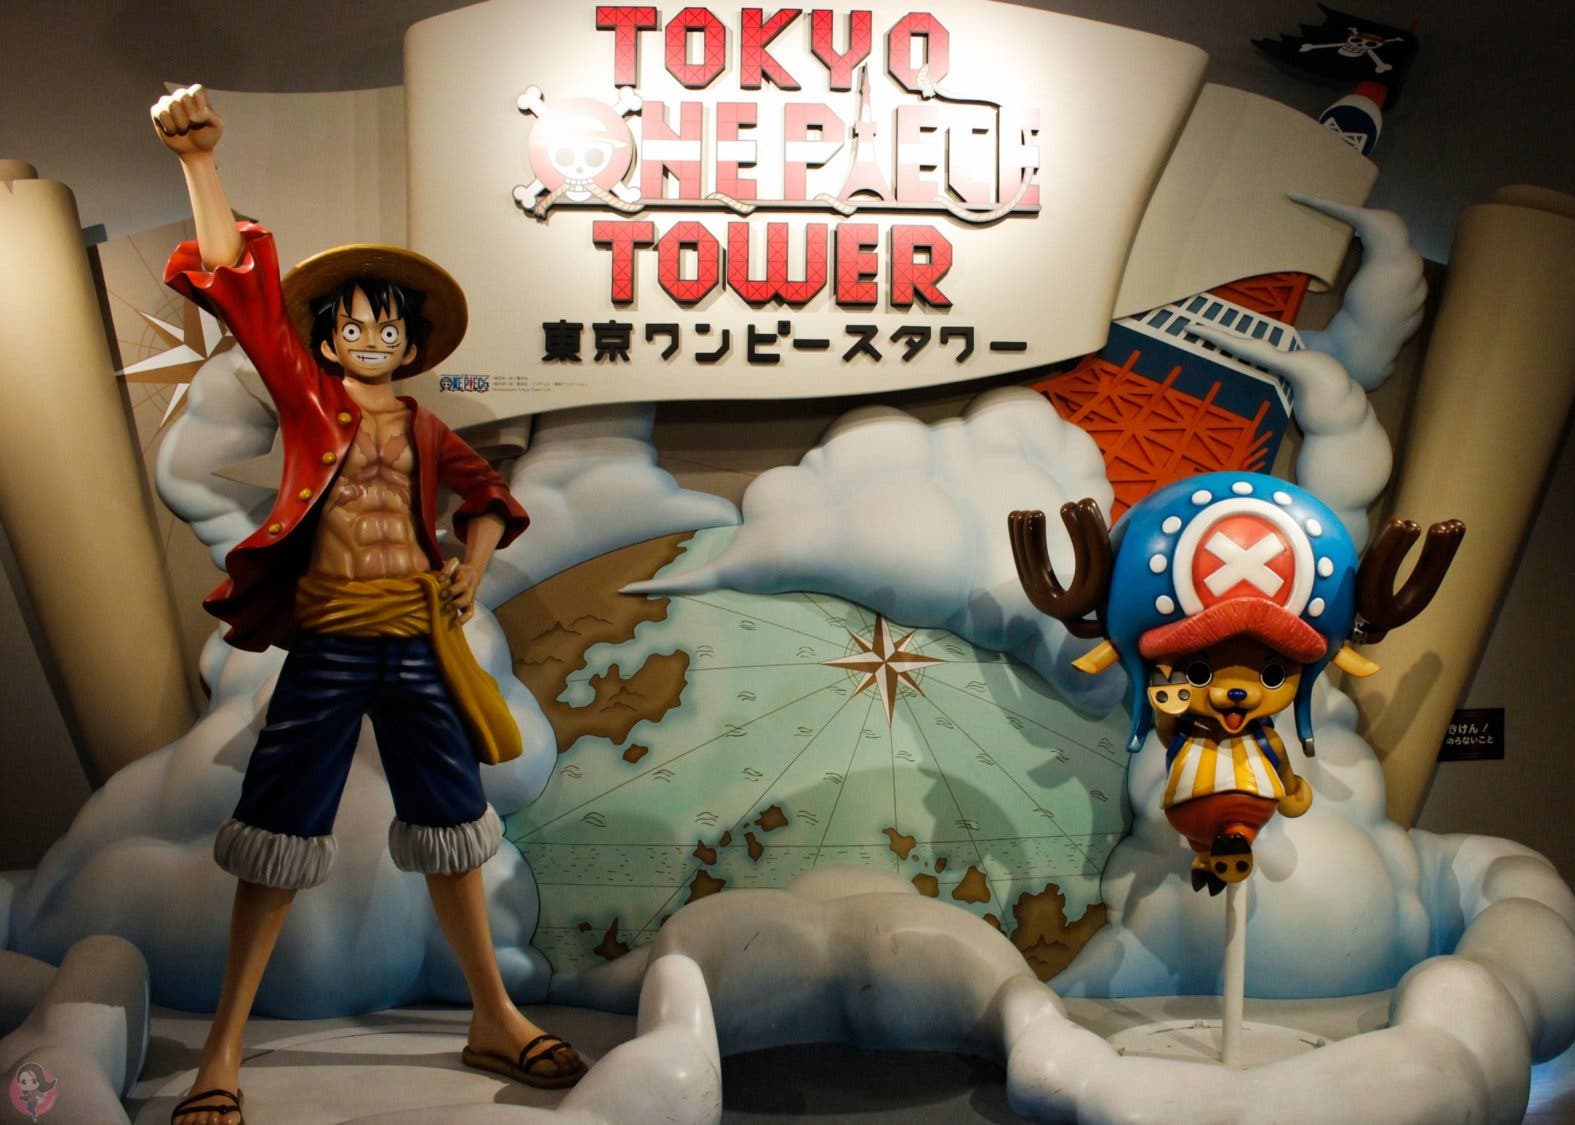 Cierran el parque temático Tokyo One Piece Tower por el coronavirus